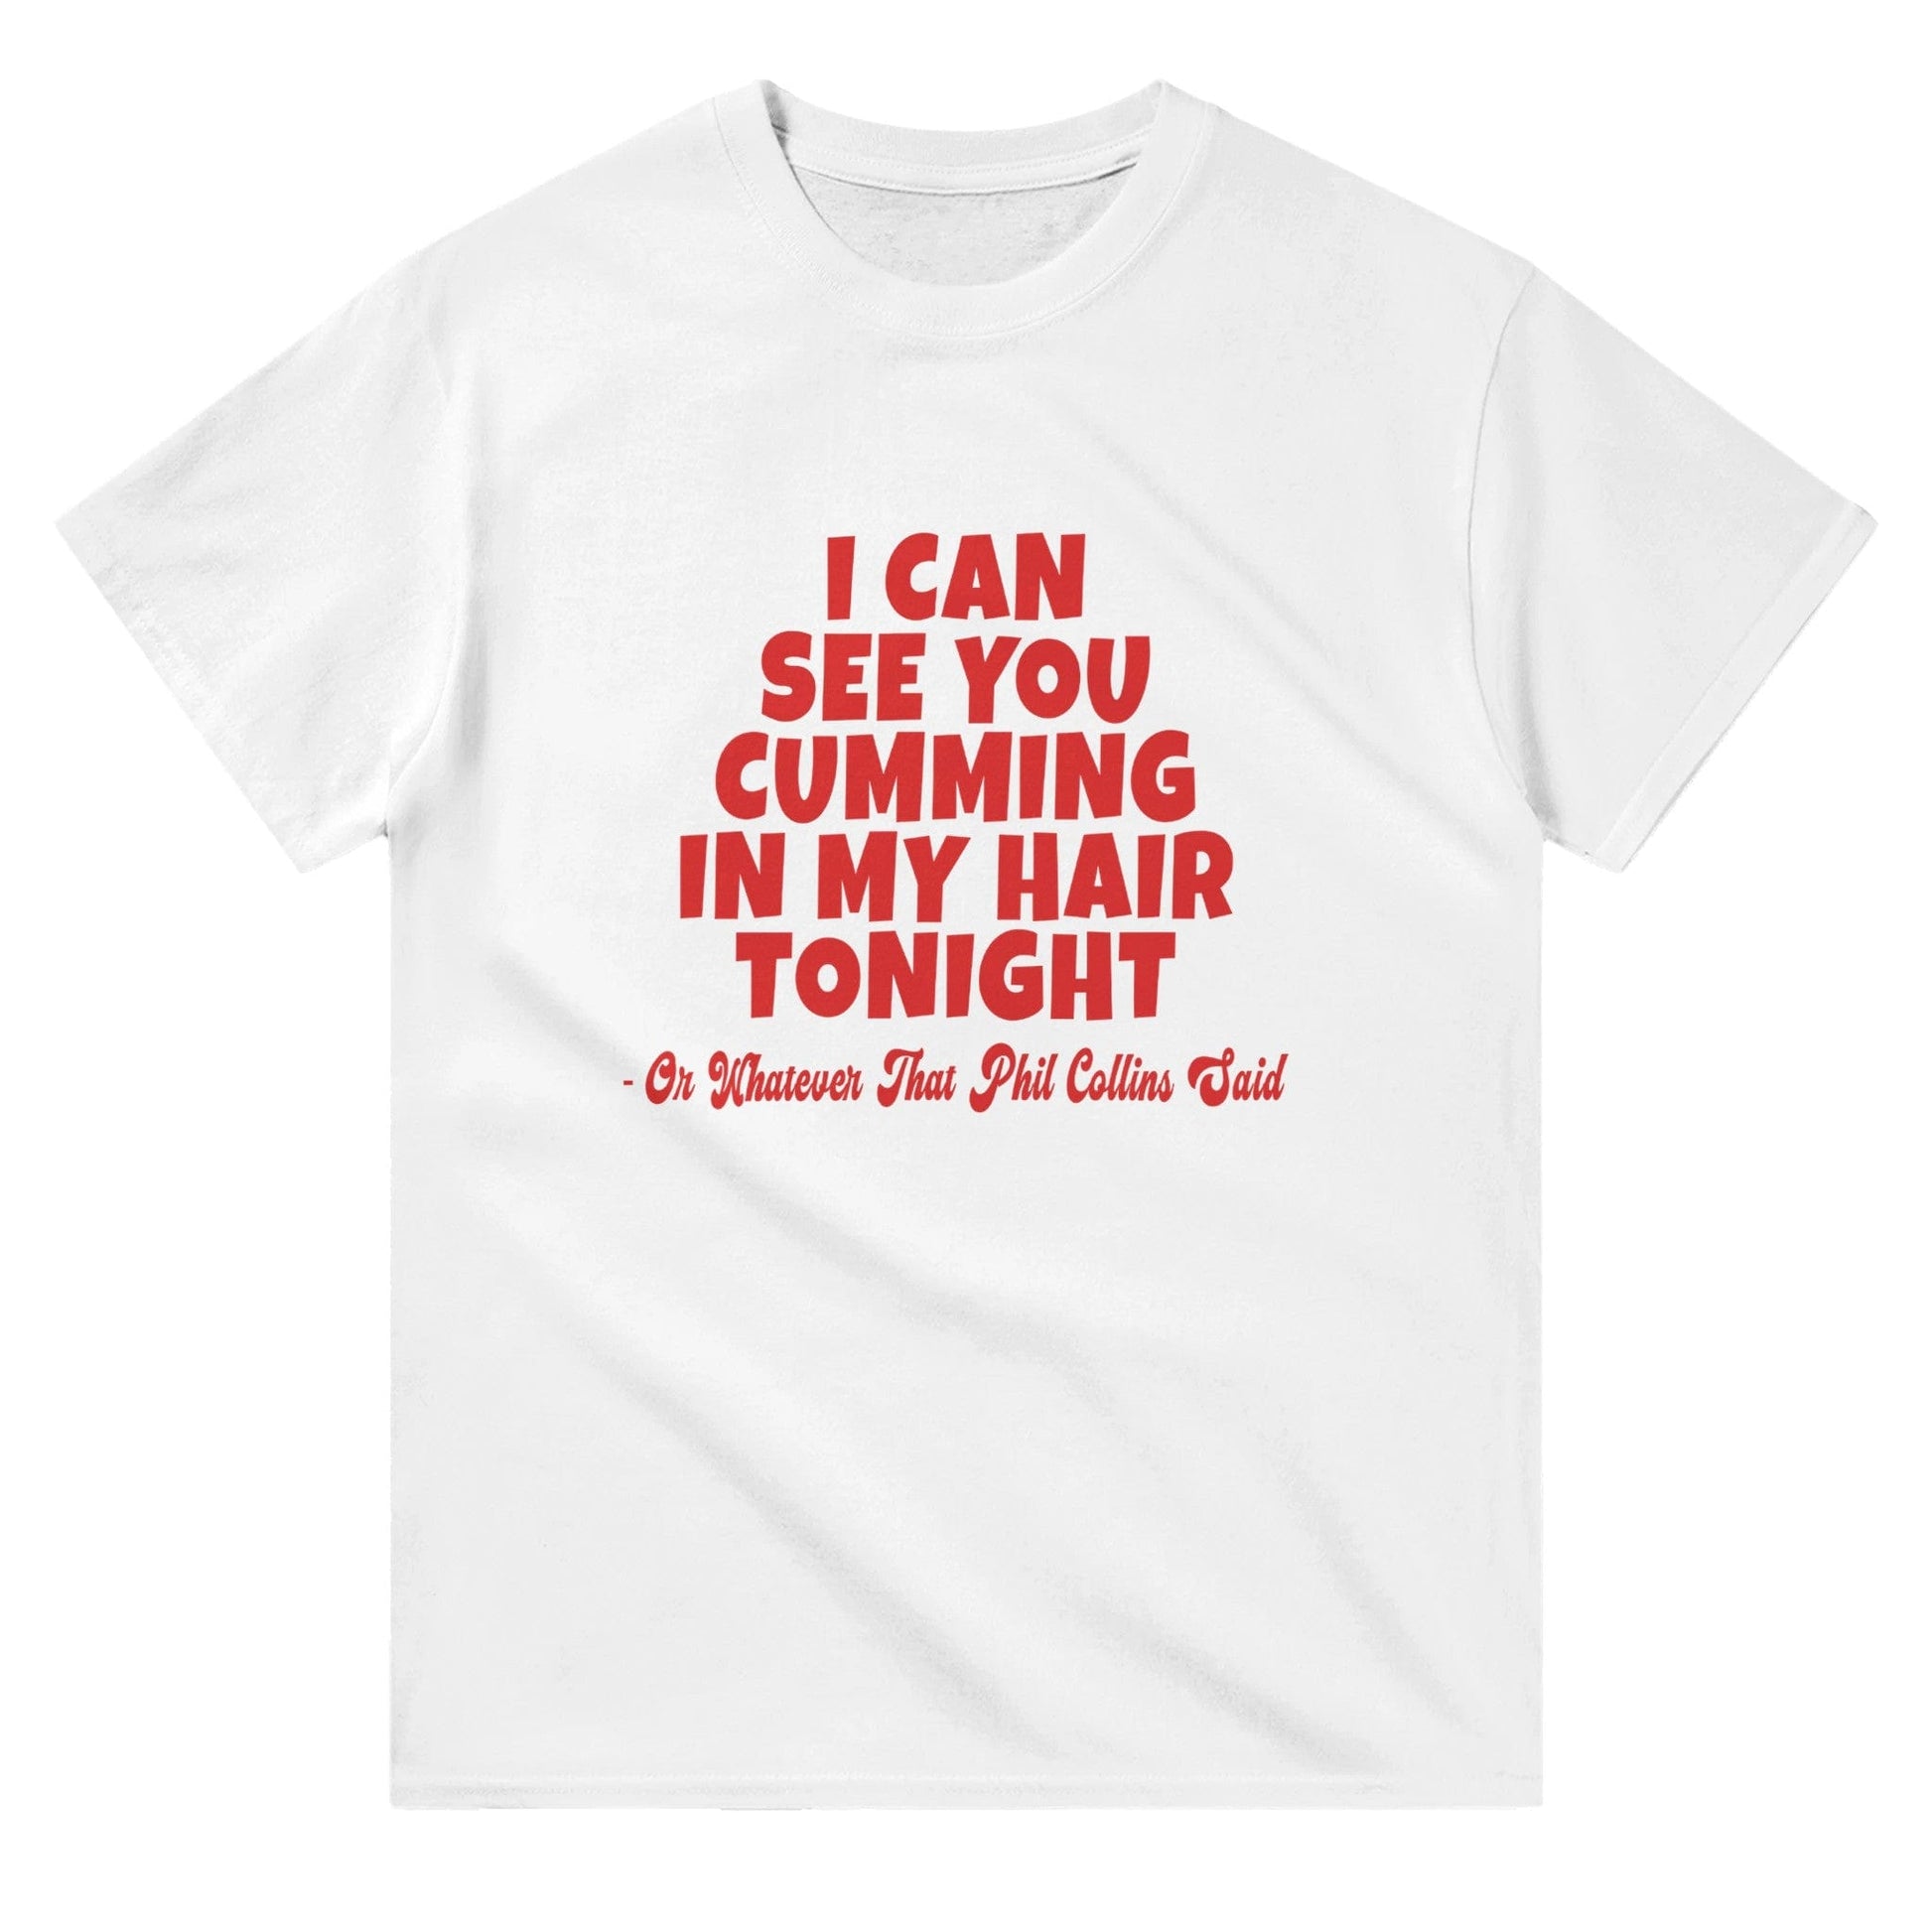 Cumming In My Hair Tonight T-shirt Graphic Tee White / S BC Australia